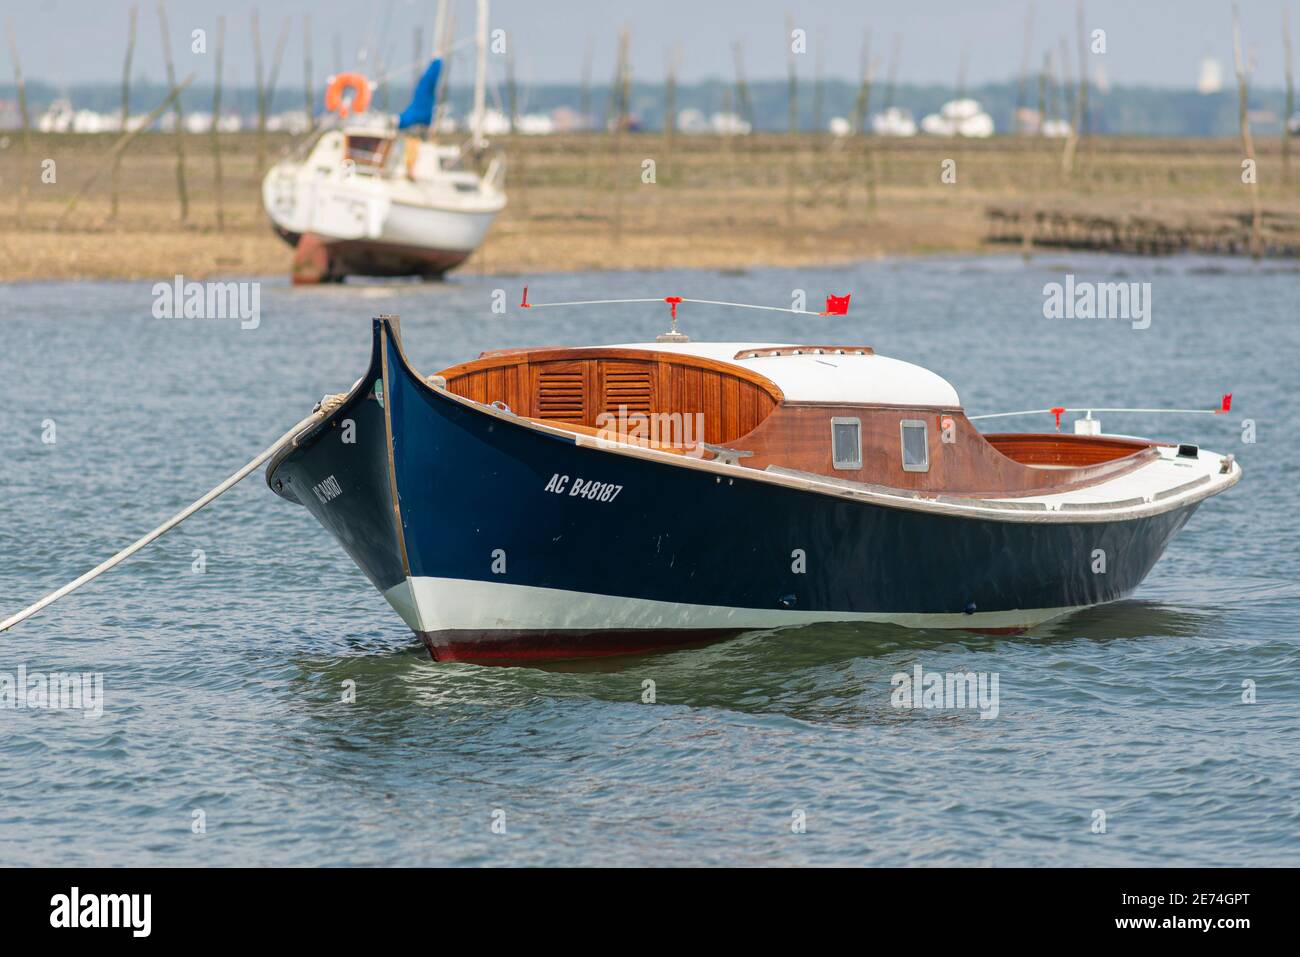 El barco Pinasse tradicional está amarrado en la bahía de Arcachon, Gironde, Francia, Europa. Es un típico barco de madera muy común en esta zona Foto de stock